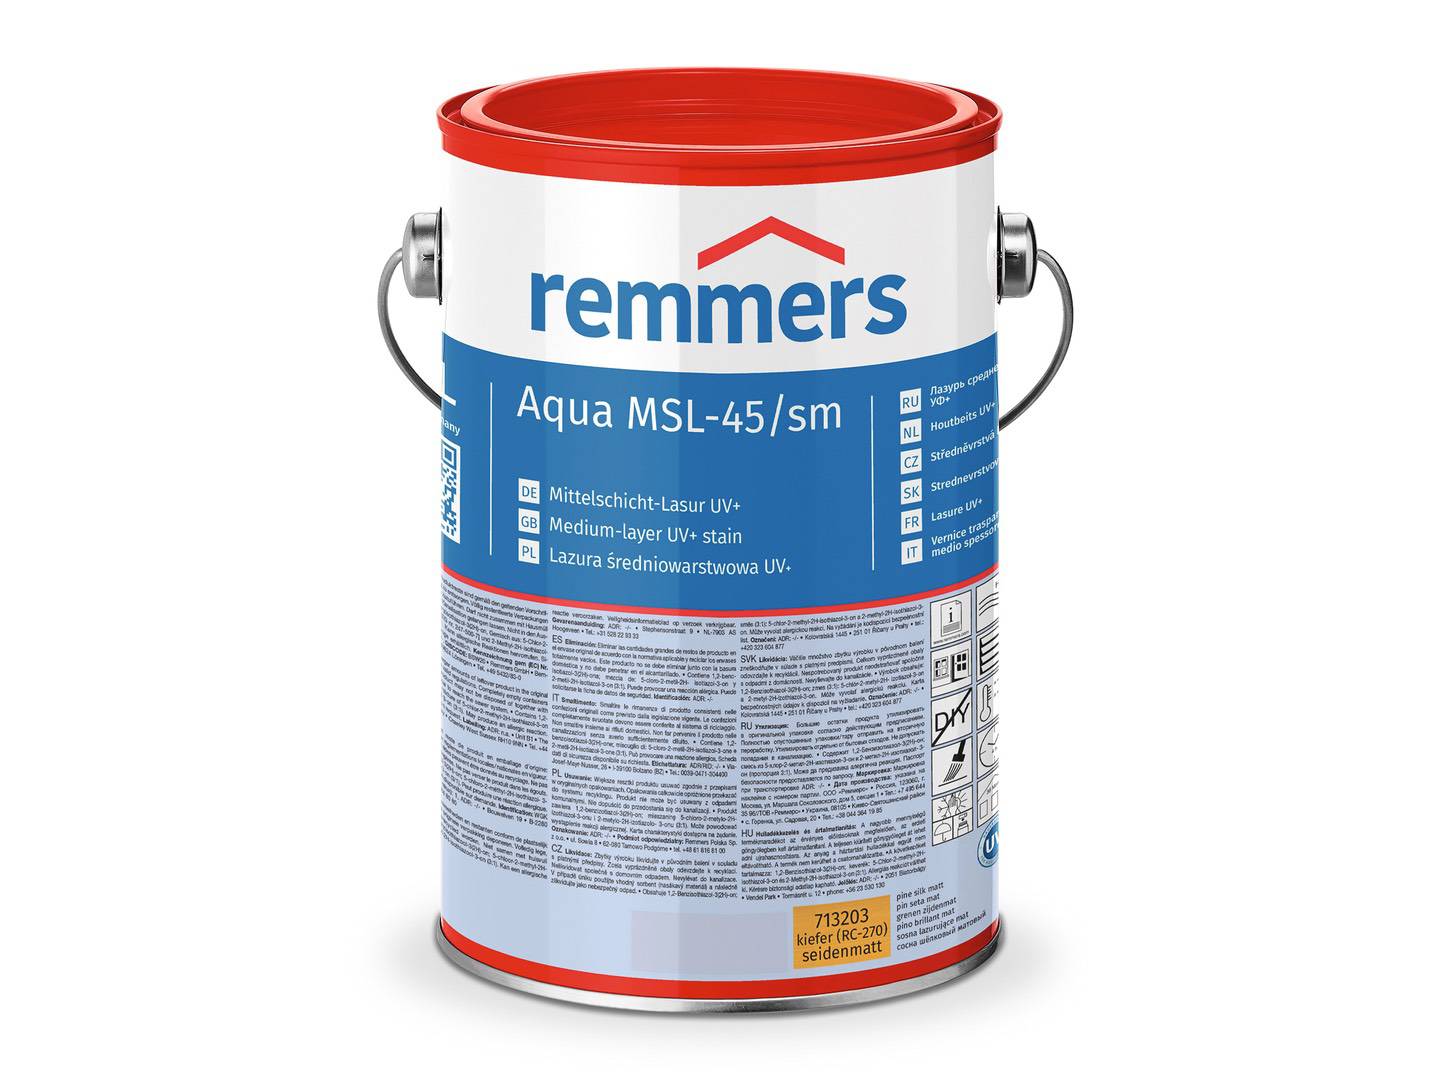 REMMERS Aqua MSL-45/sm-Mittelschicht-Lasur UV+ nussbaum (RC-660) 5 l